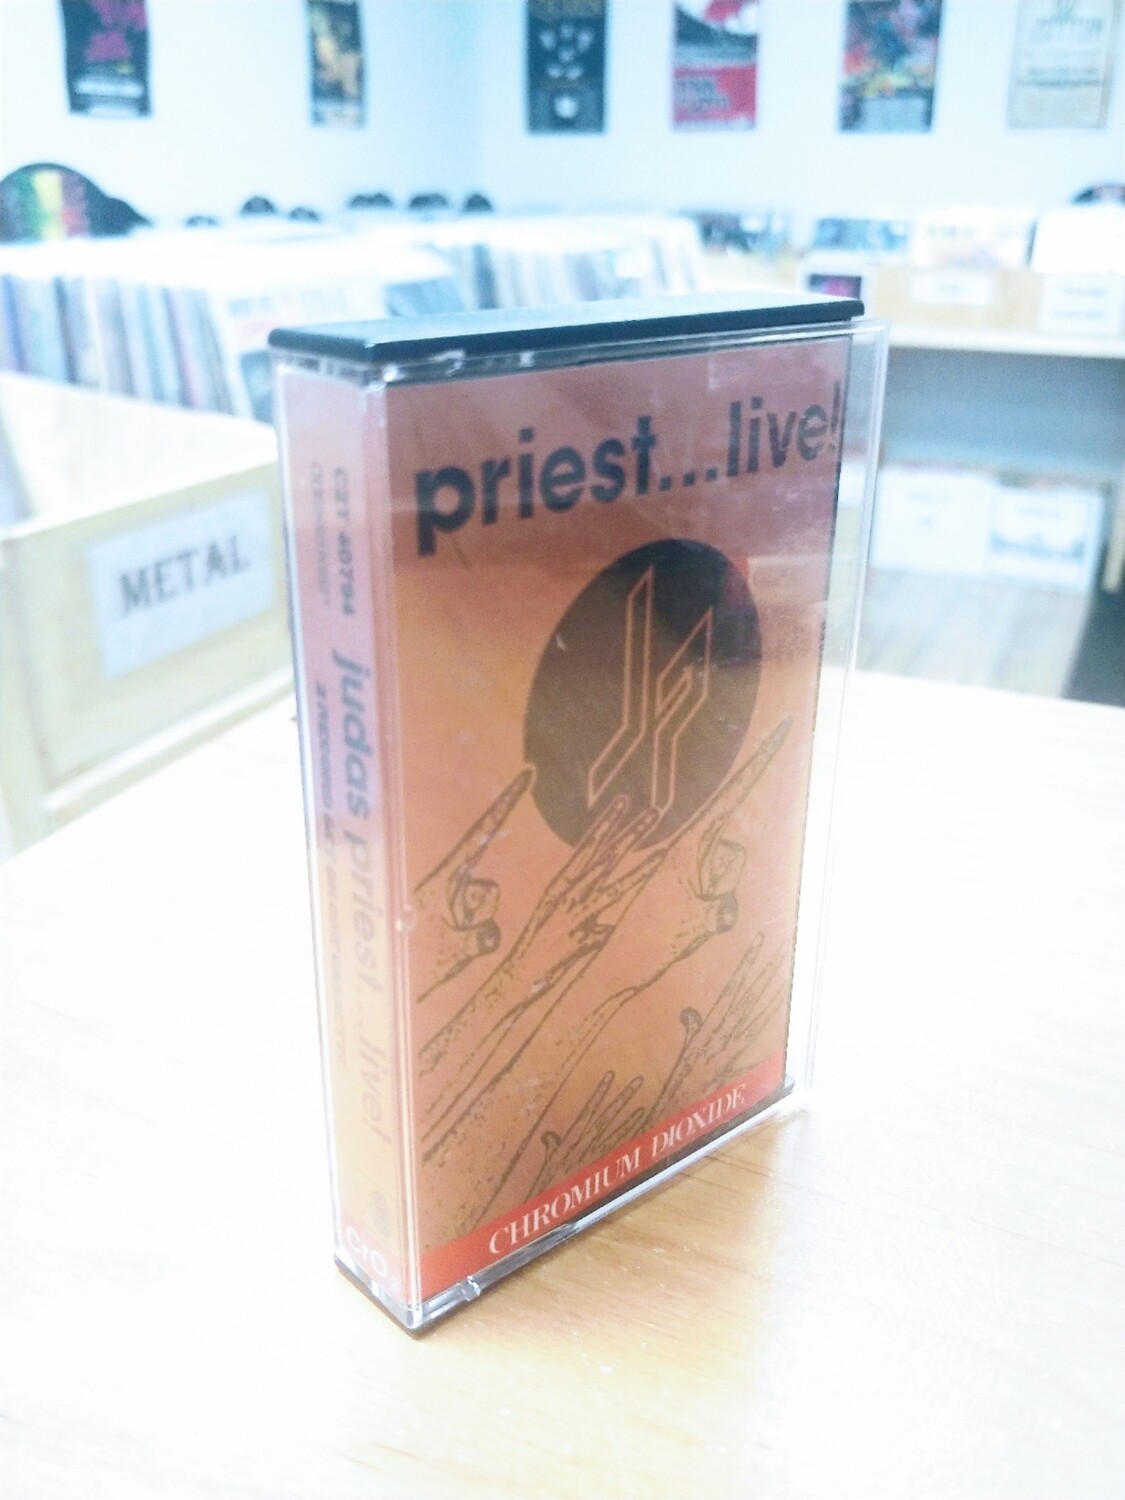 Judas Priest - Priest Live